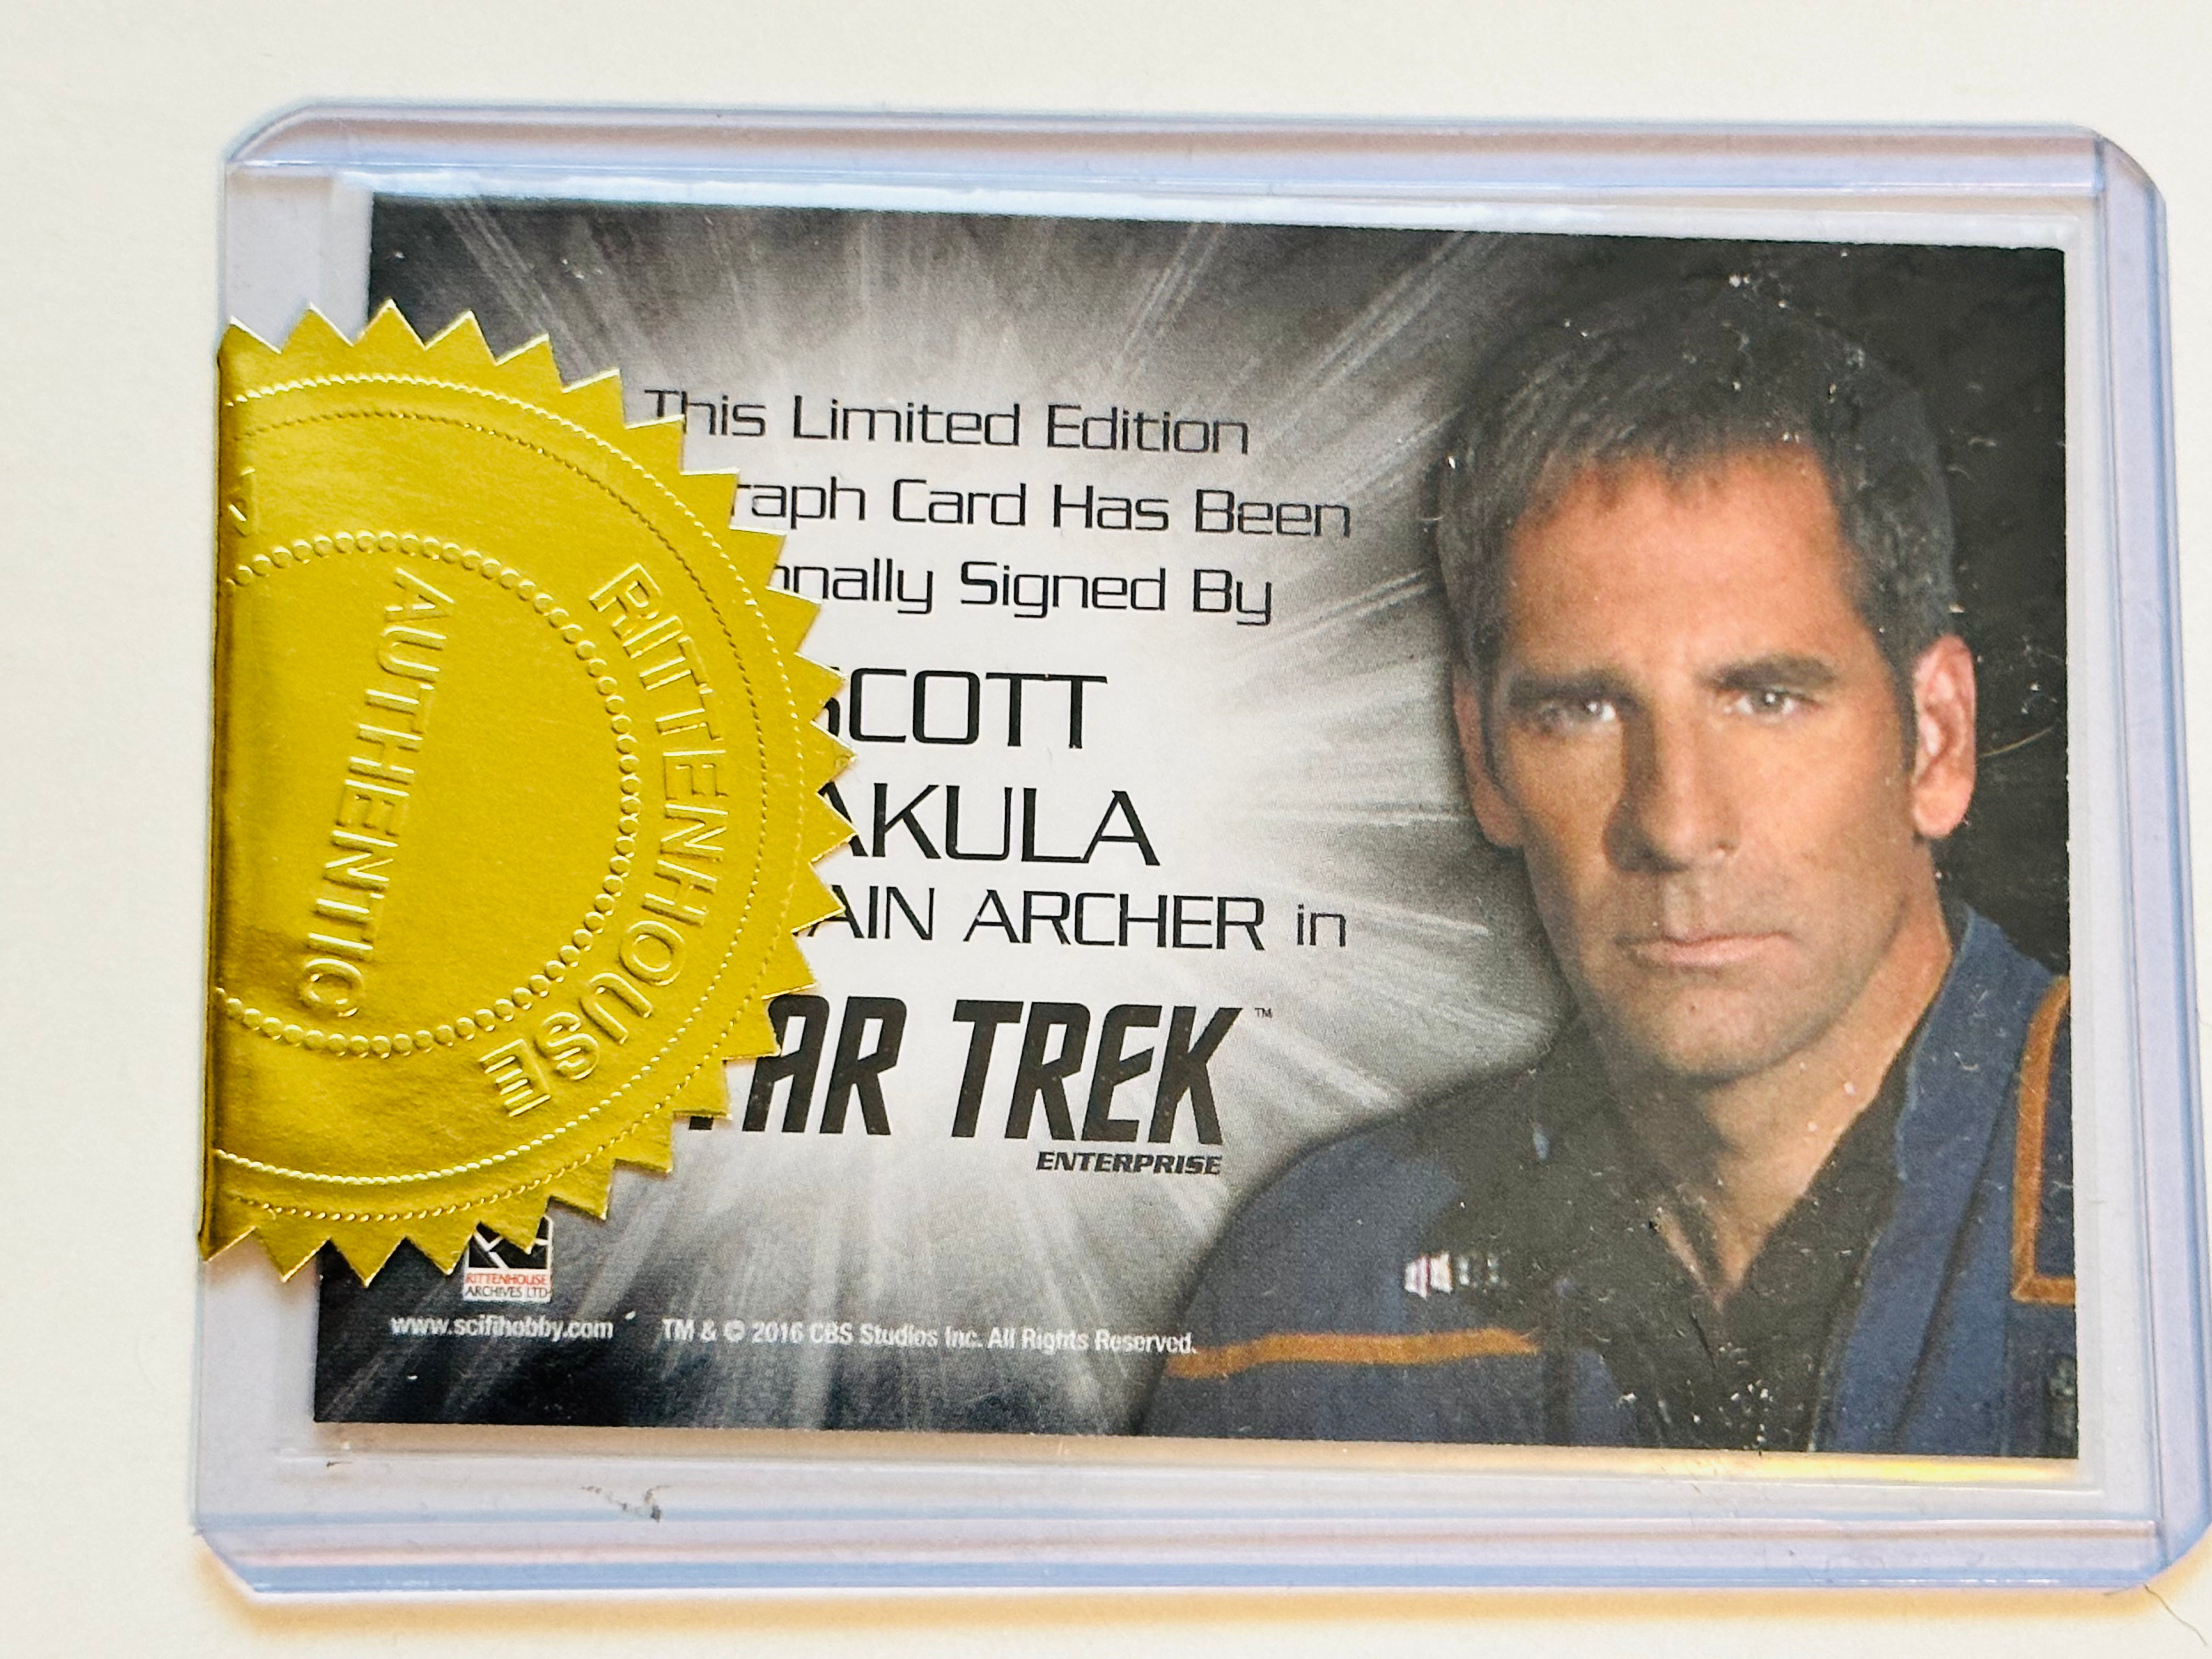 Star Trek Scott Bakula rare autograph insert card certified